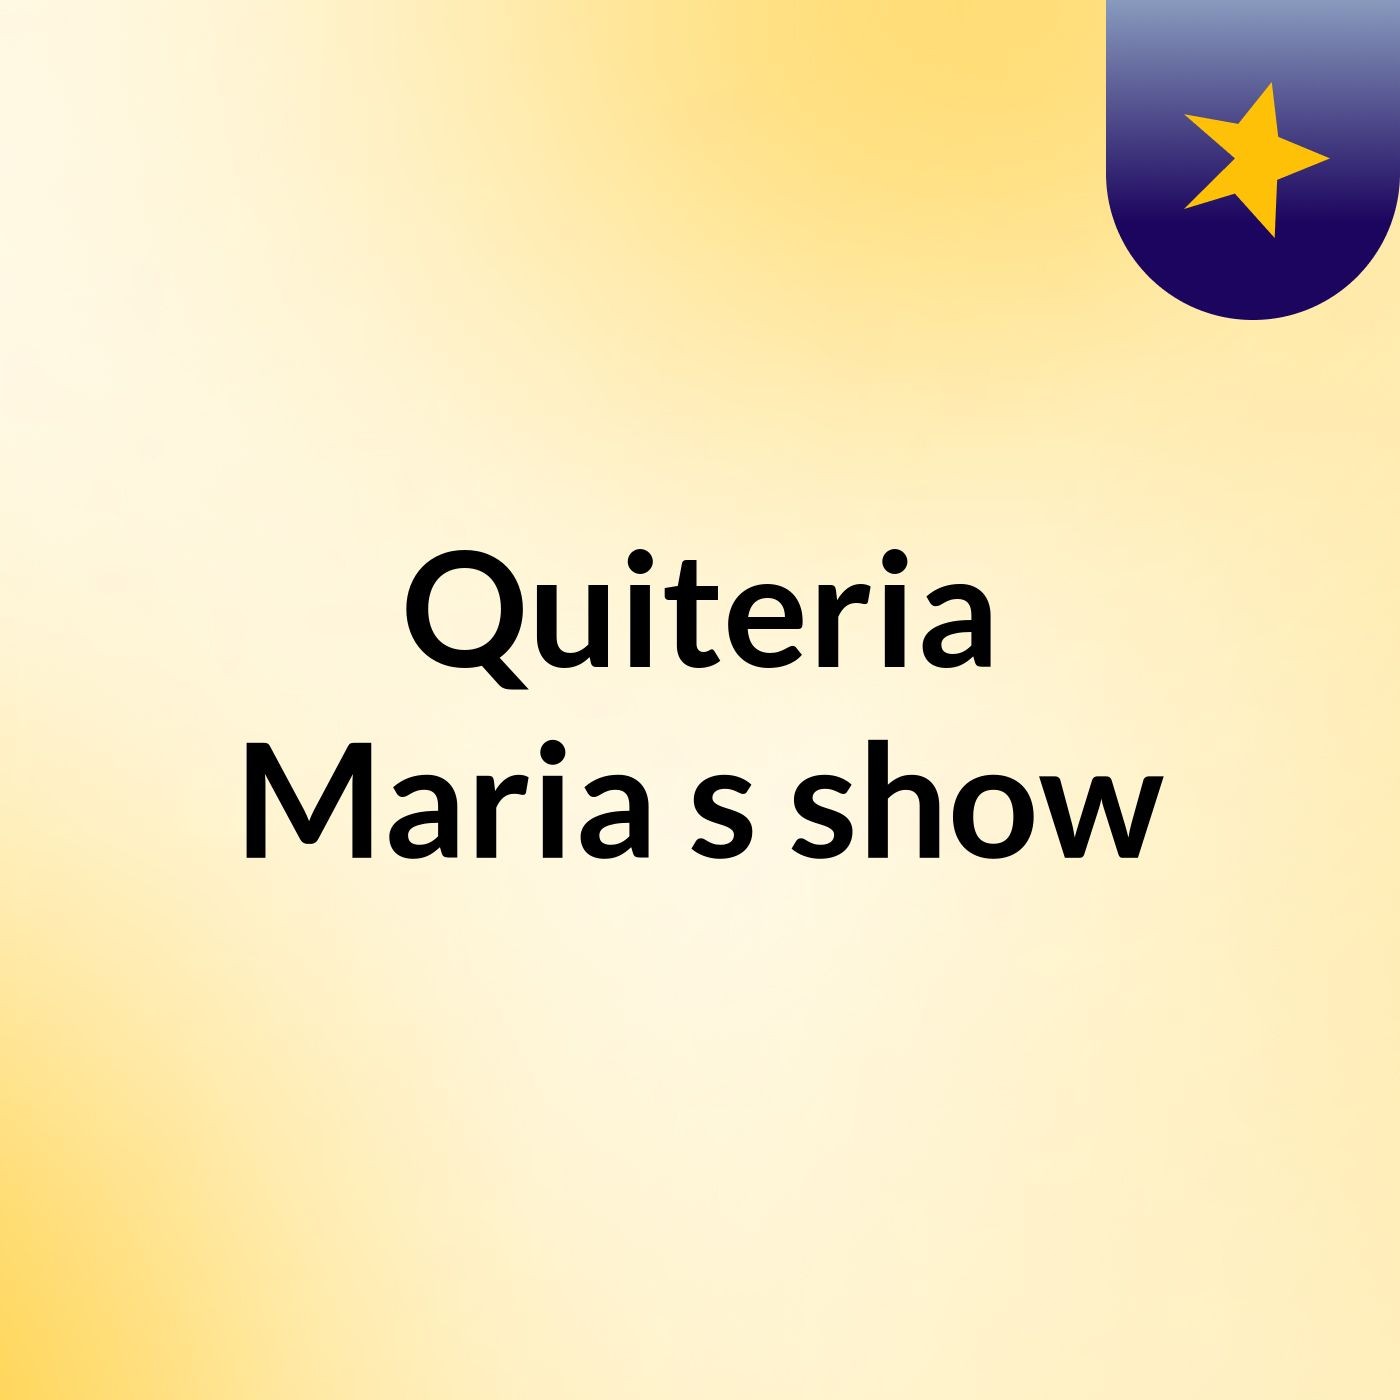 Quiteria Maria's show